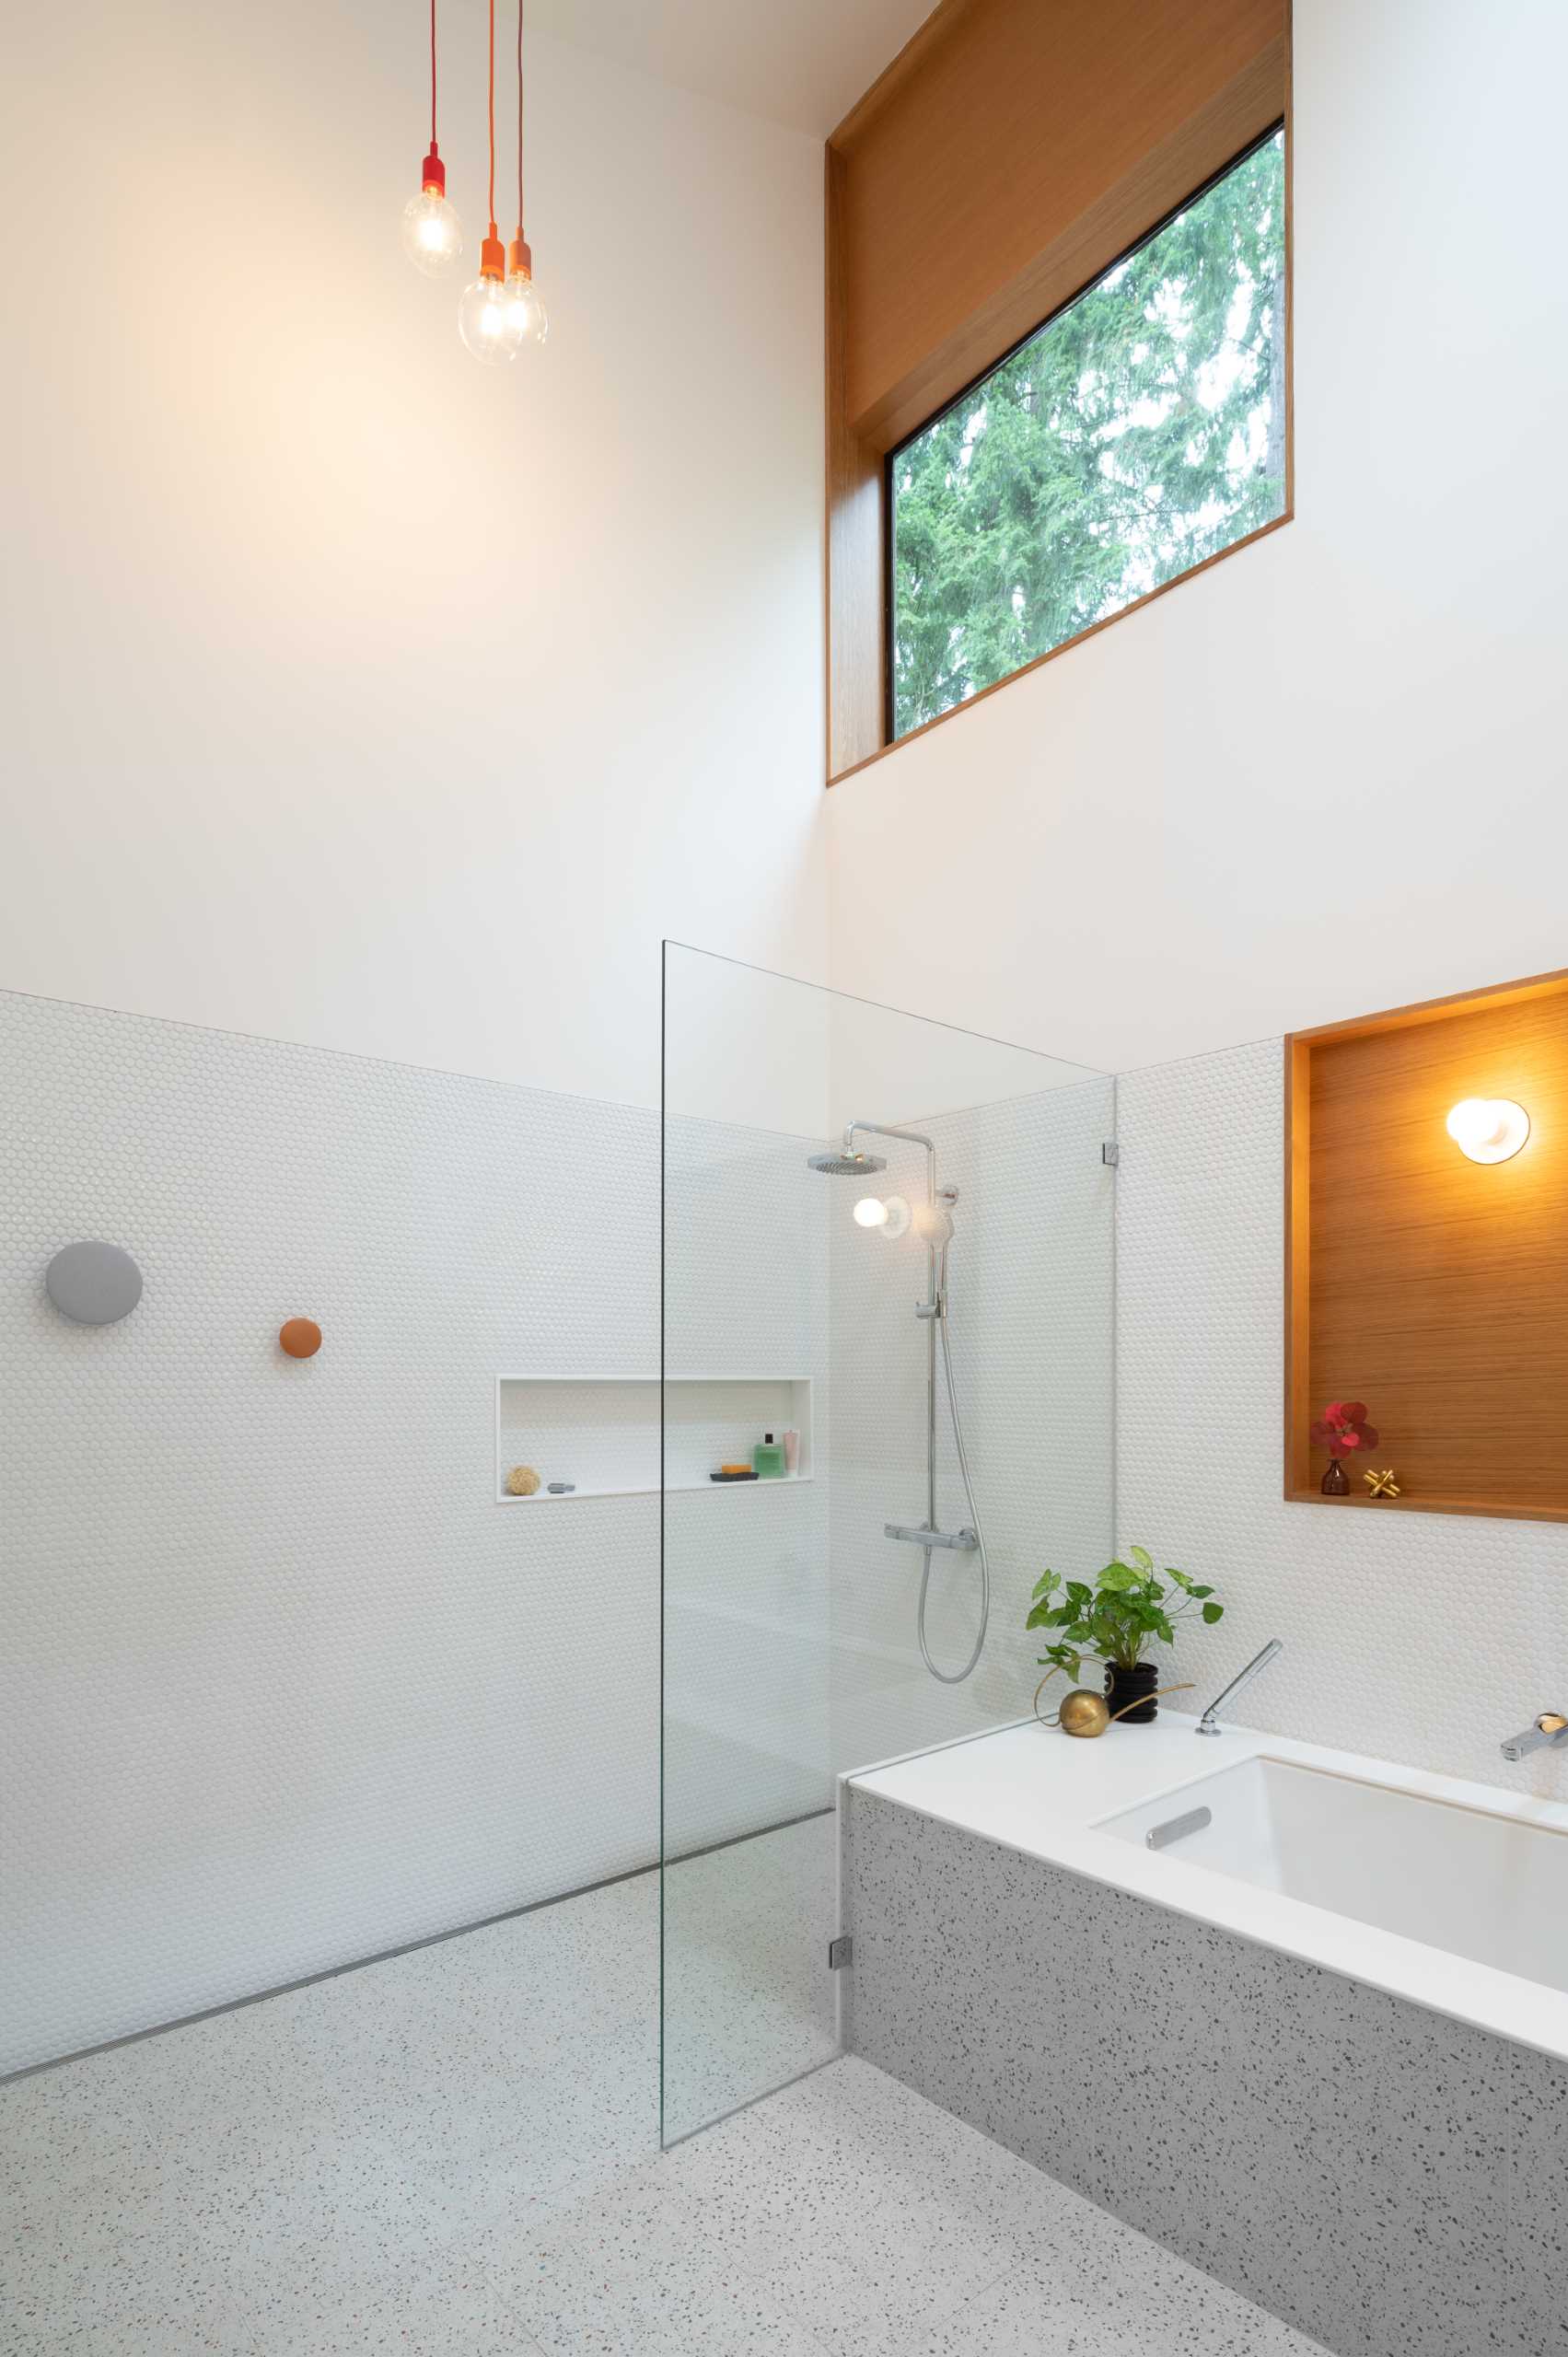 یک حمام مدرن با دیوارهای پوشیده از کاشی‌های پنی سفید، یک وان حمام توکار، و دوش با طاقچه قفسه‌بندی.